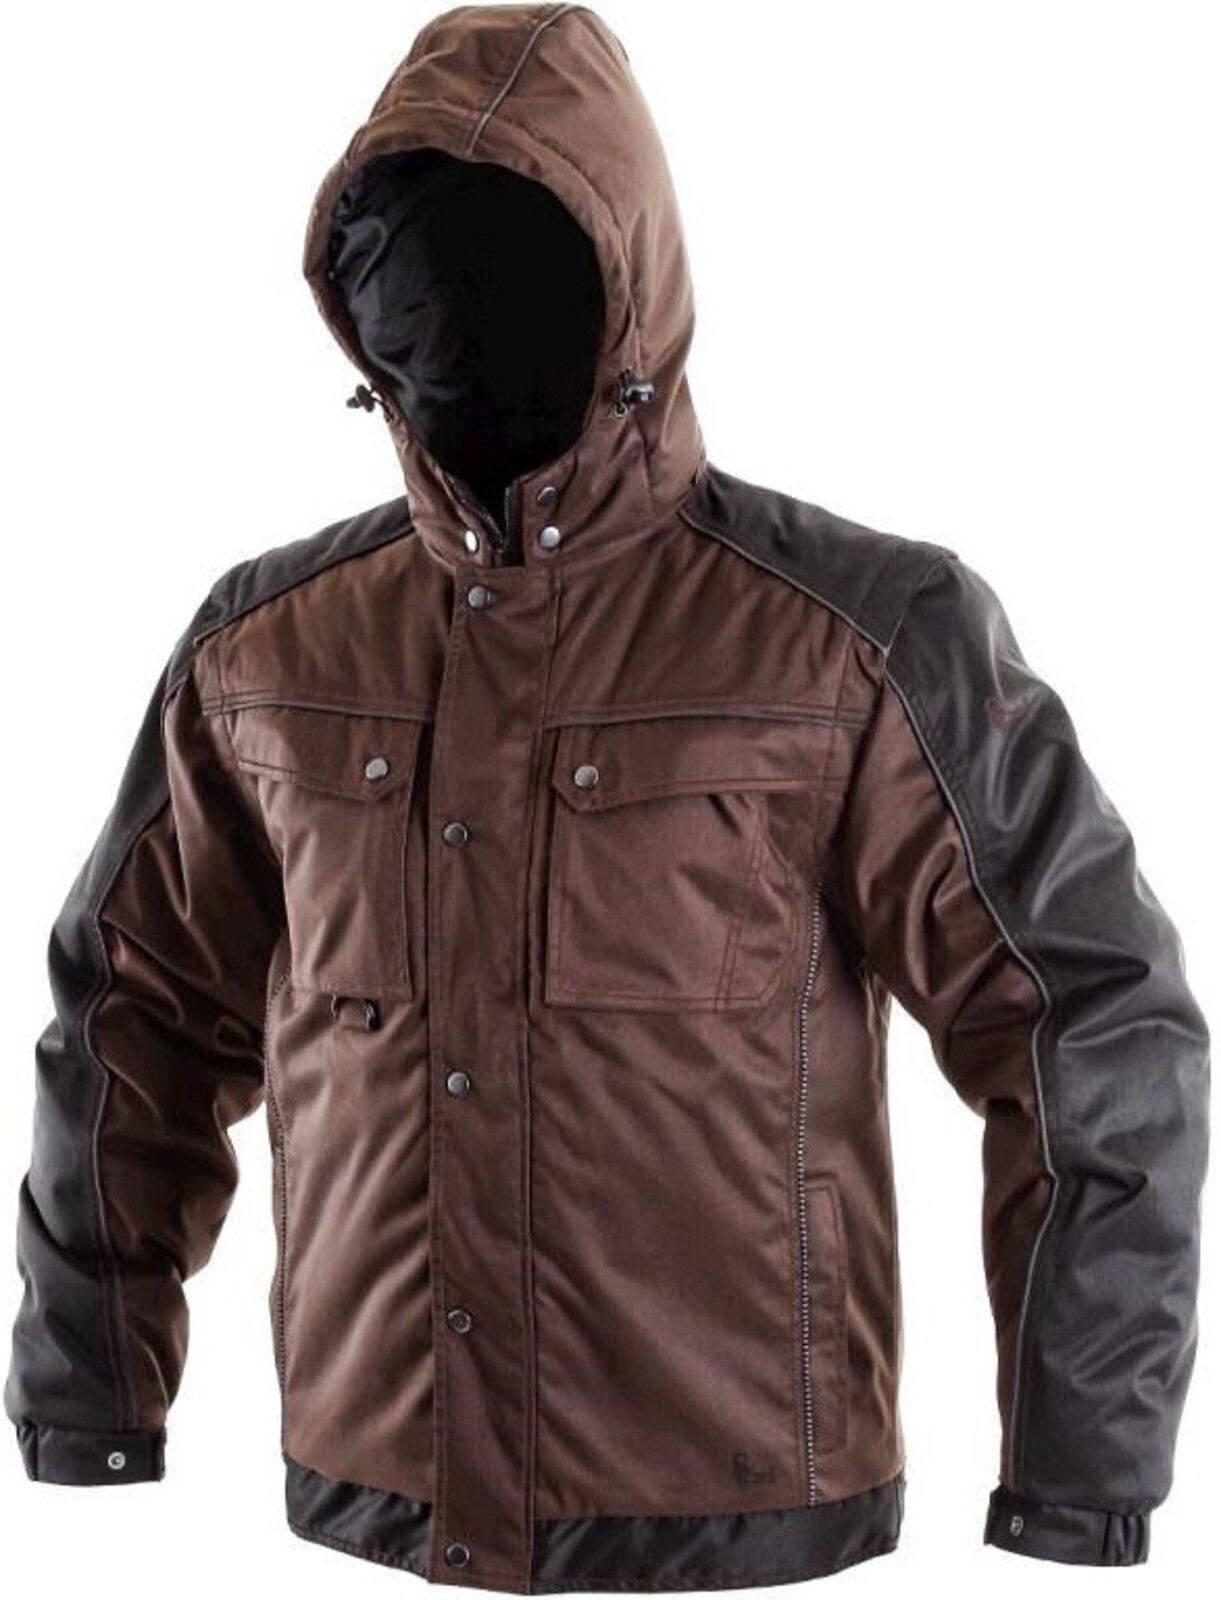 Pánska zimná bunda CXS Irvine 2v1 - veľkosť: S, farba: hnedá/čierna